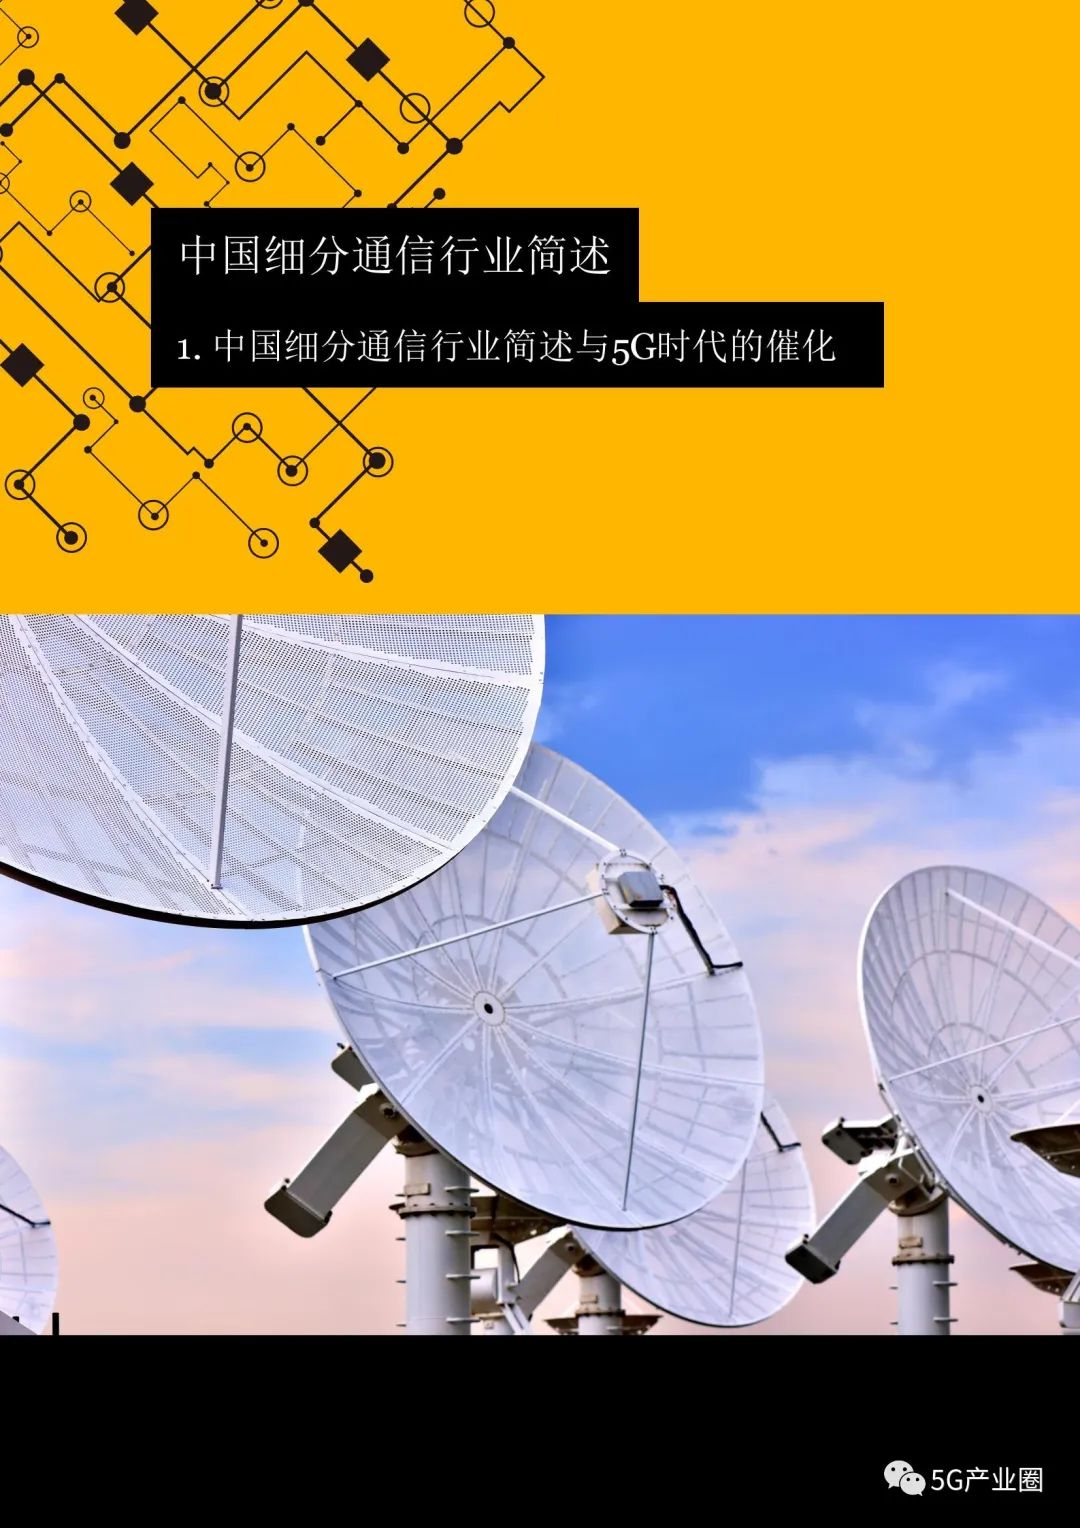 苏州：5G 技术引领城市变革，市民畅享高速网络服务  第6张